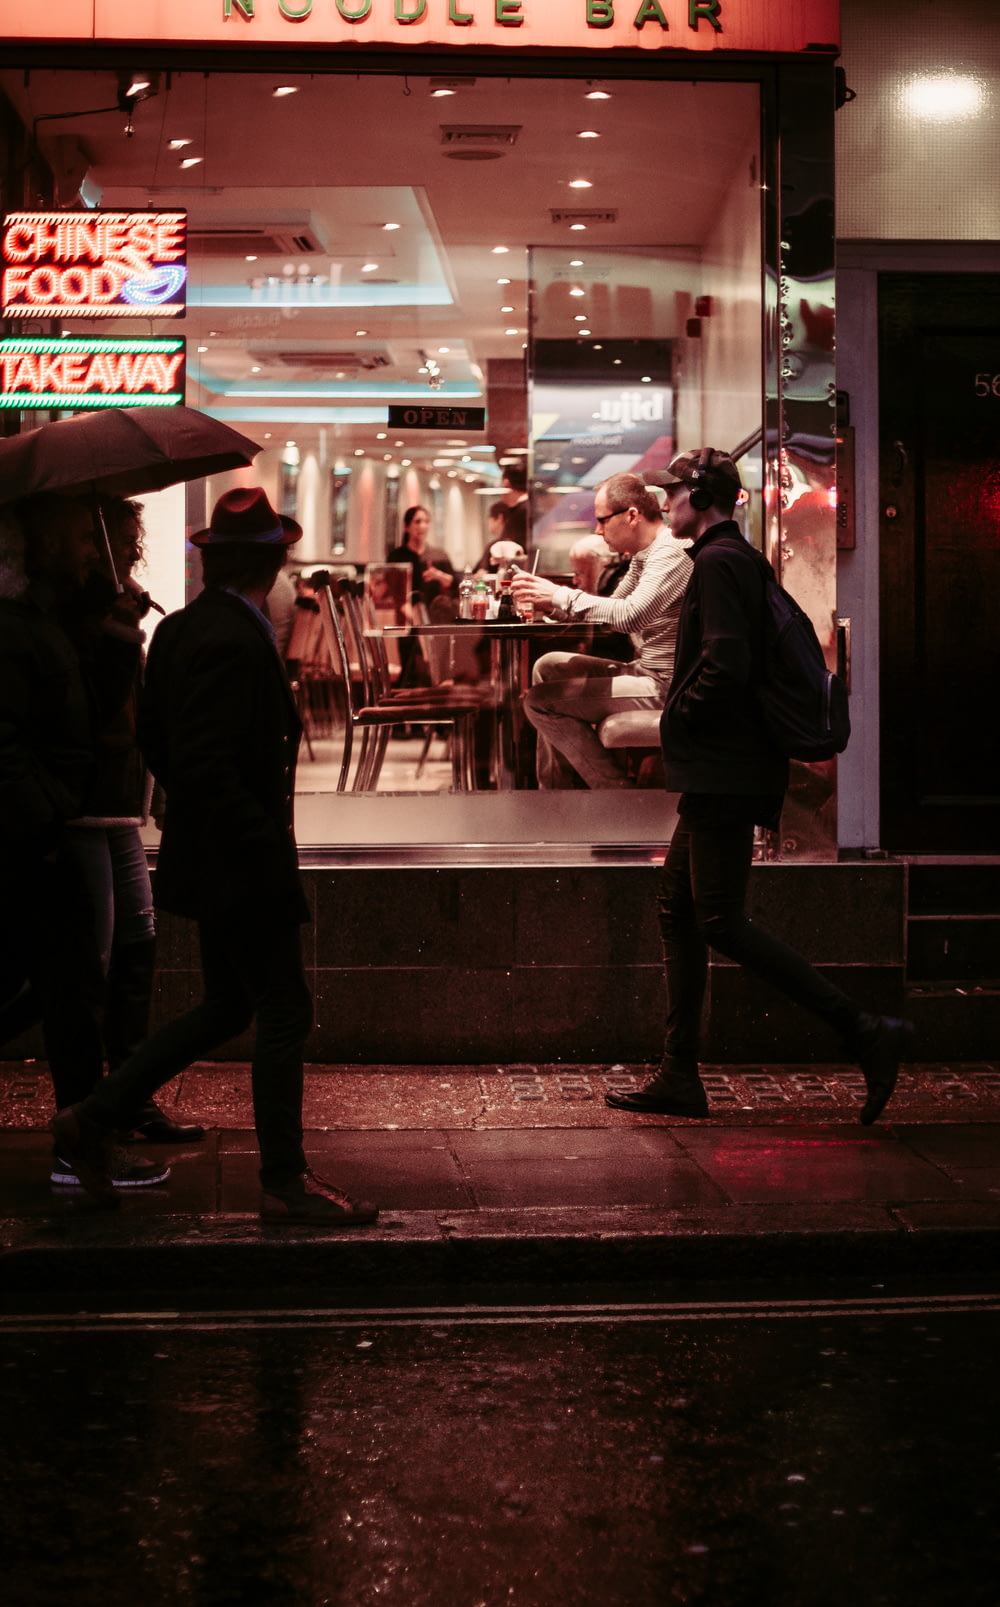 man walking near restaurant wearing jacket